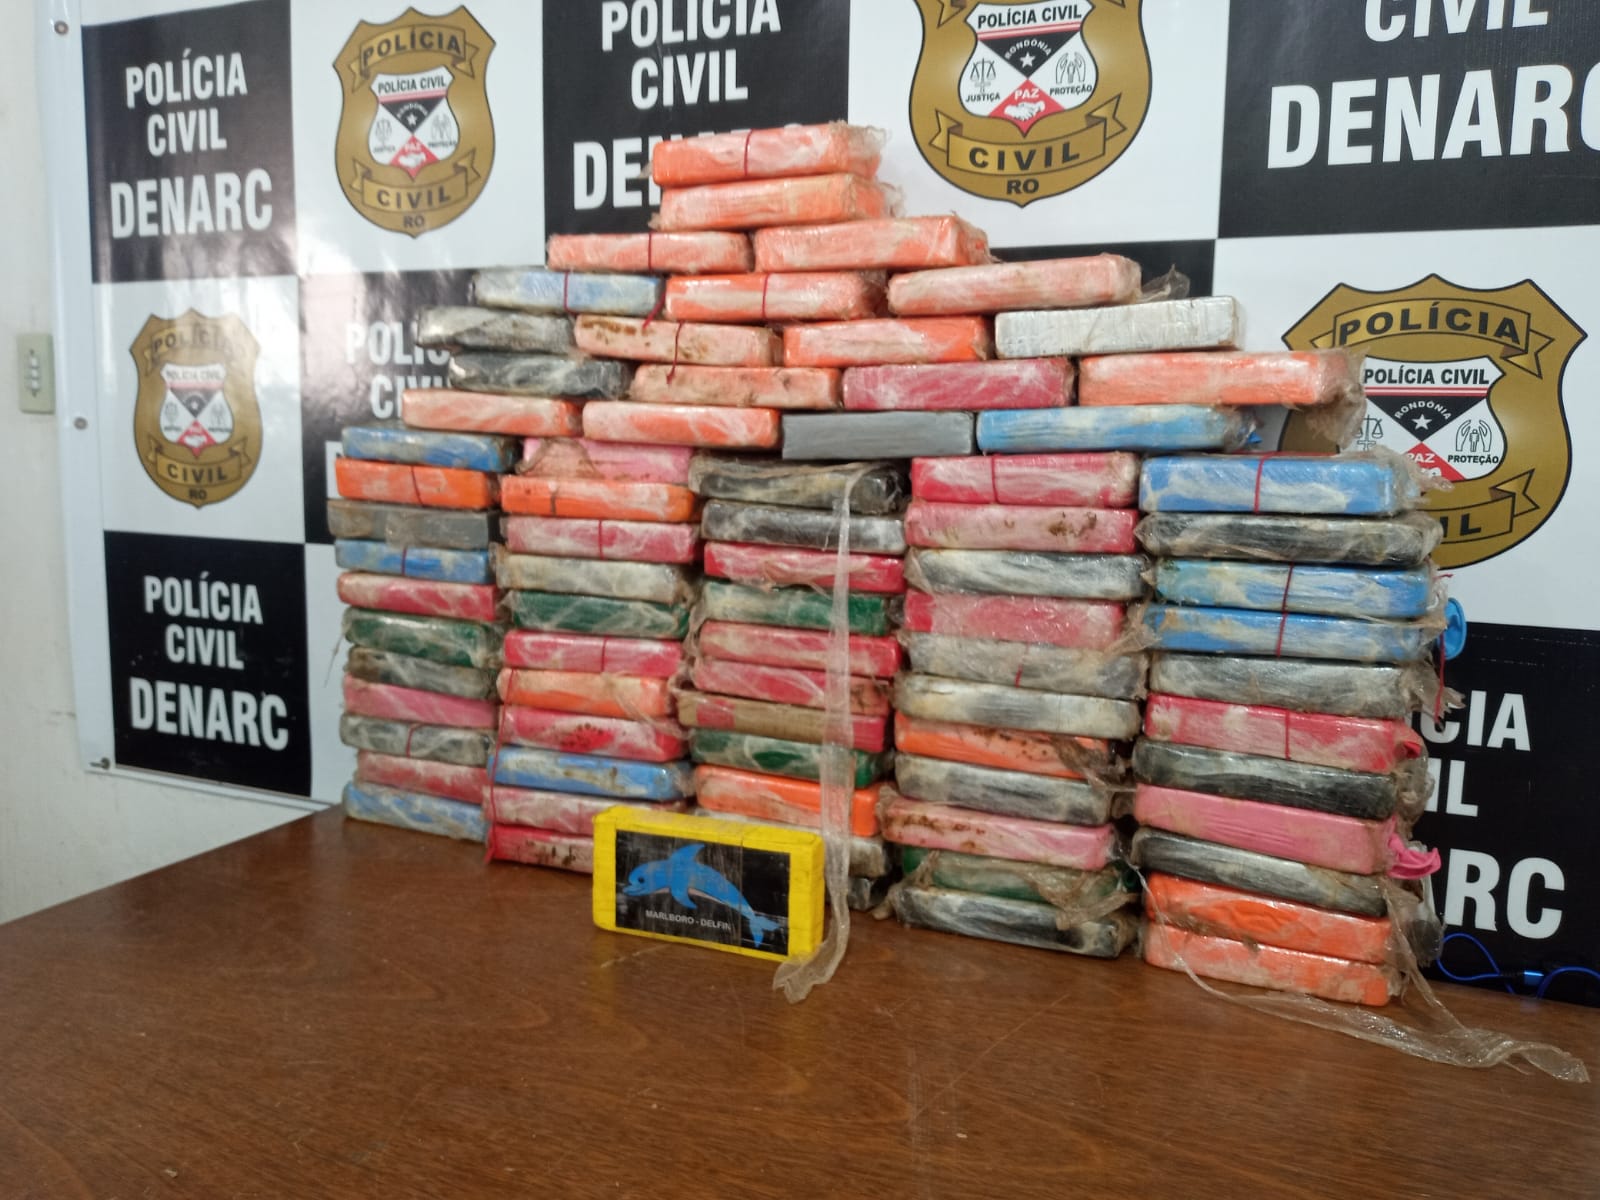 81 QUILOS: Denarc encontra Hilux 'recheada' de cocaína em posto de combustíveis